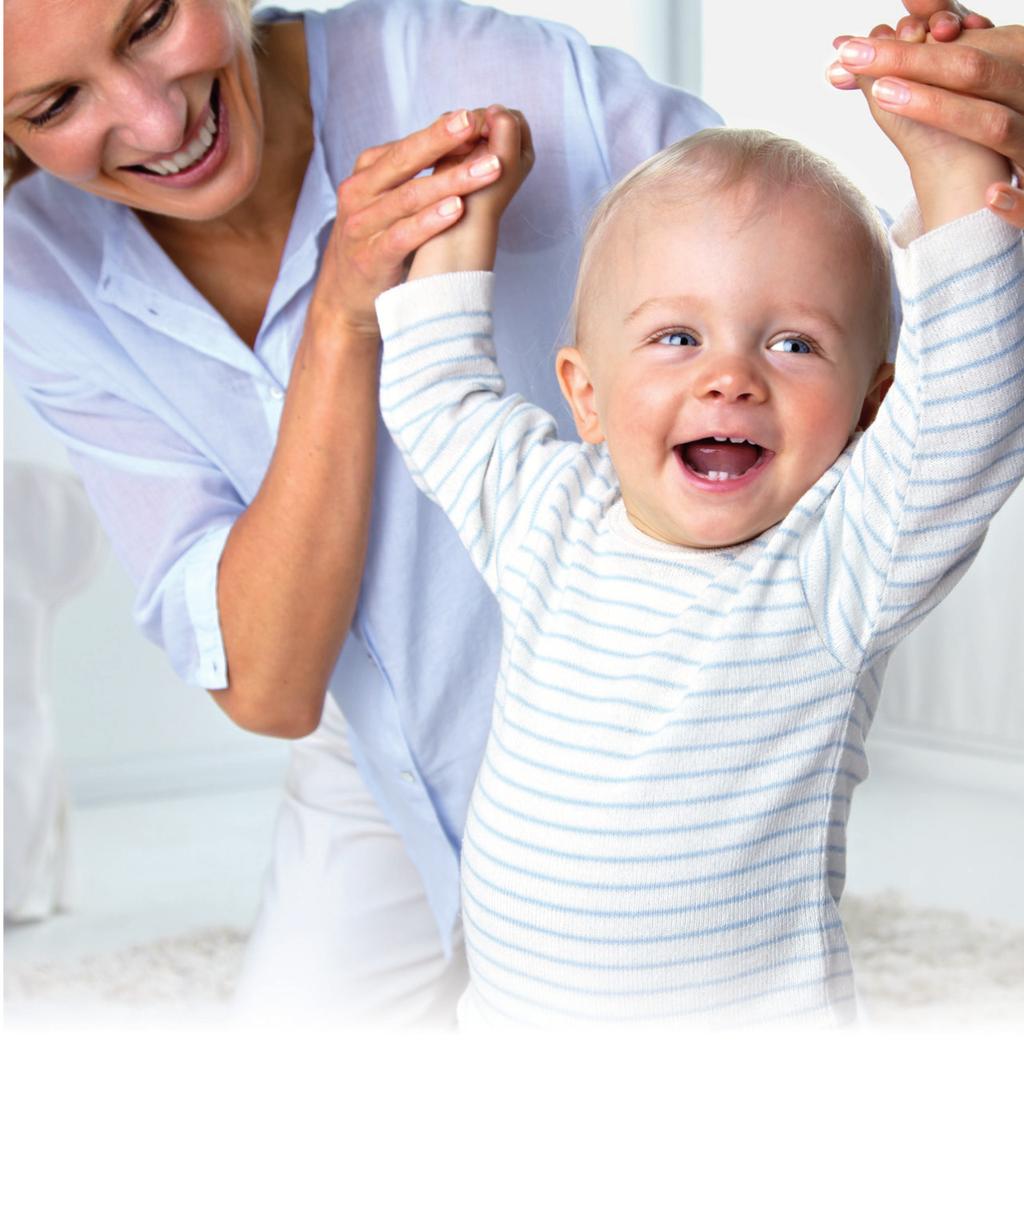 Dentilin Zahnungsgel Hilfe bei ersten Zähnchen! von 679 Müttern würden Dentilin weiterempfehlen www.trnd.